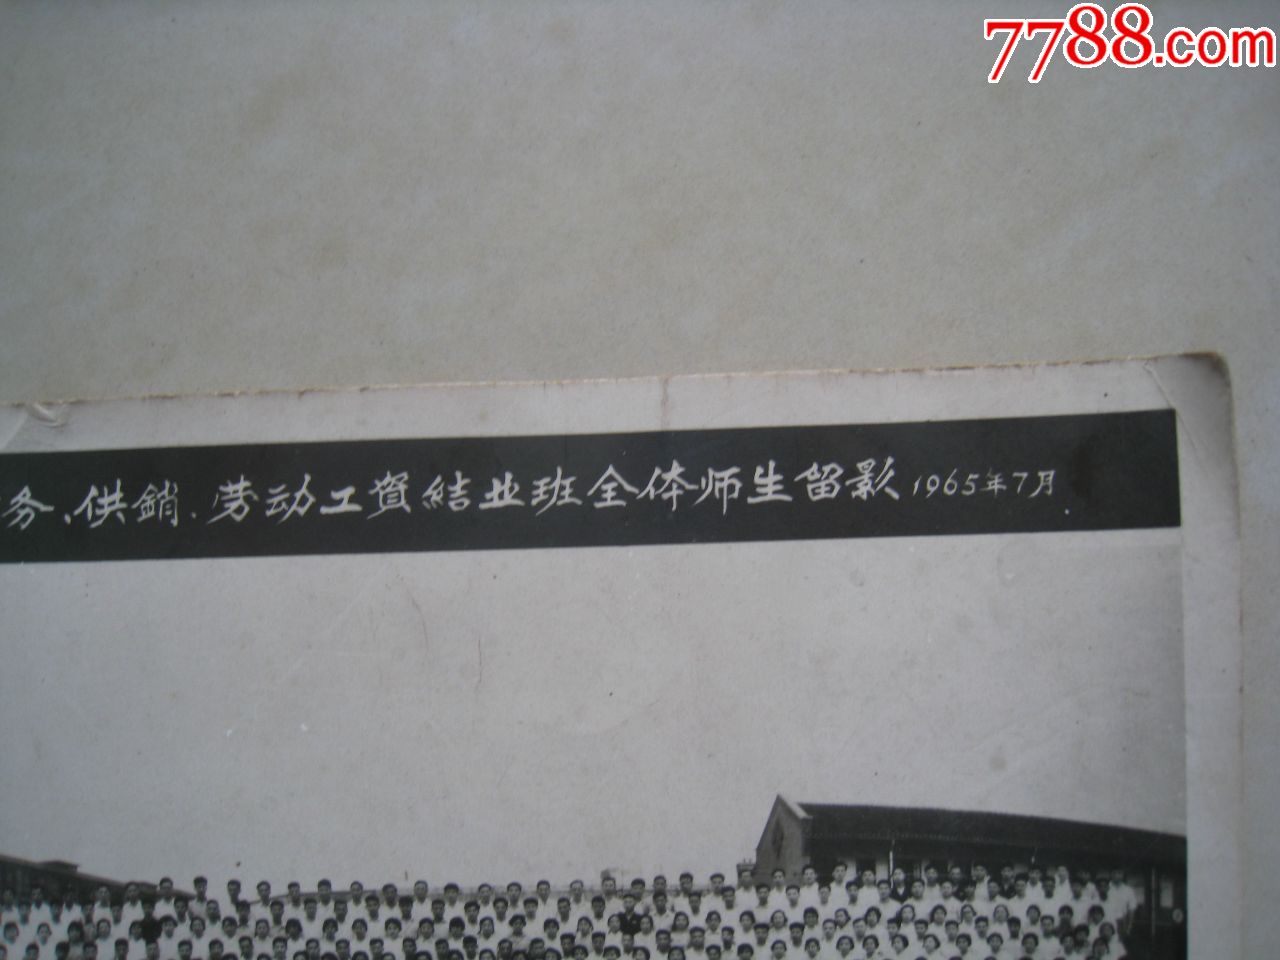 大尺寸六十年代老照片:上海纺织工业局干部学